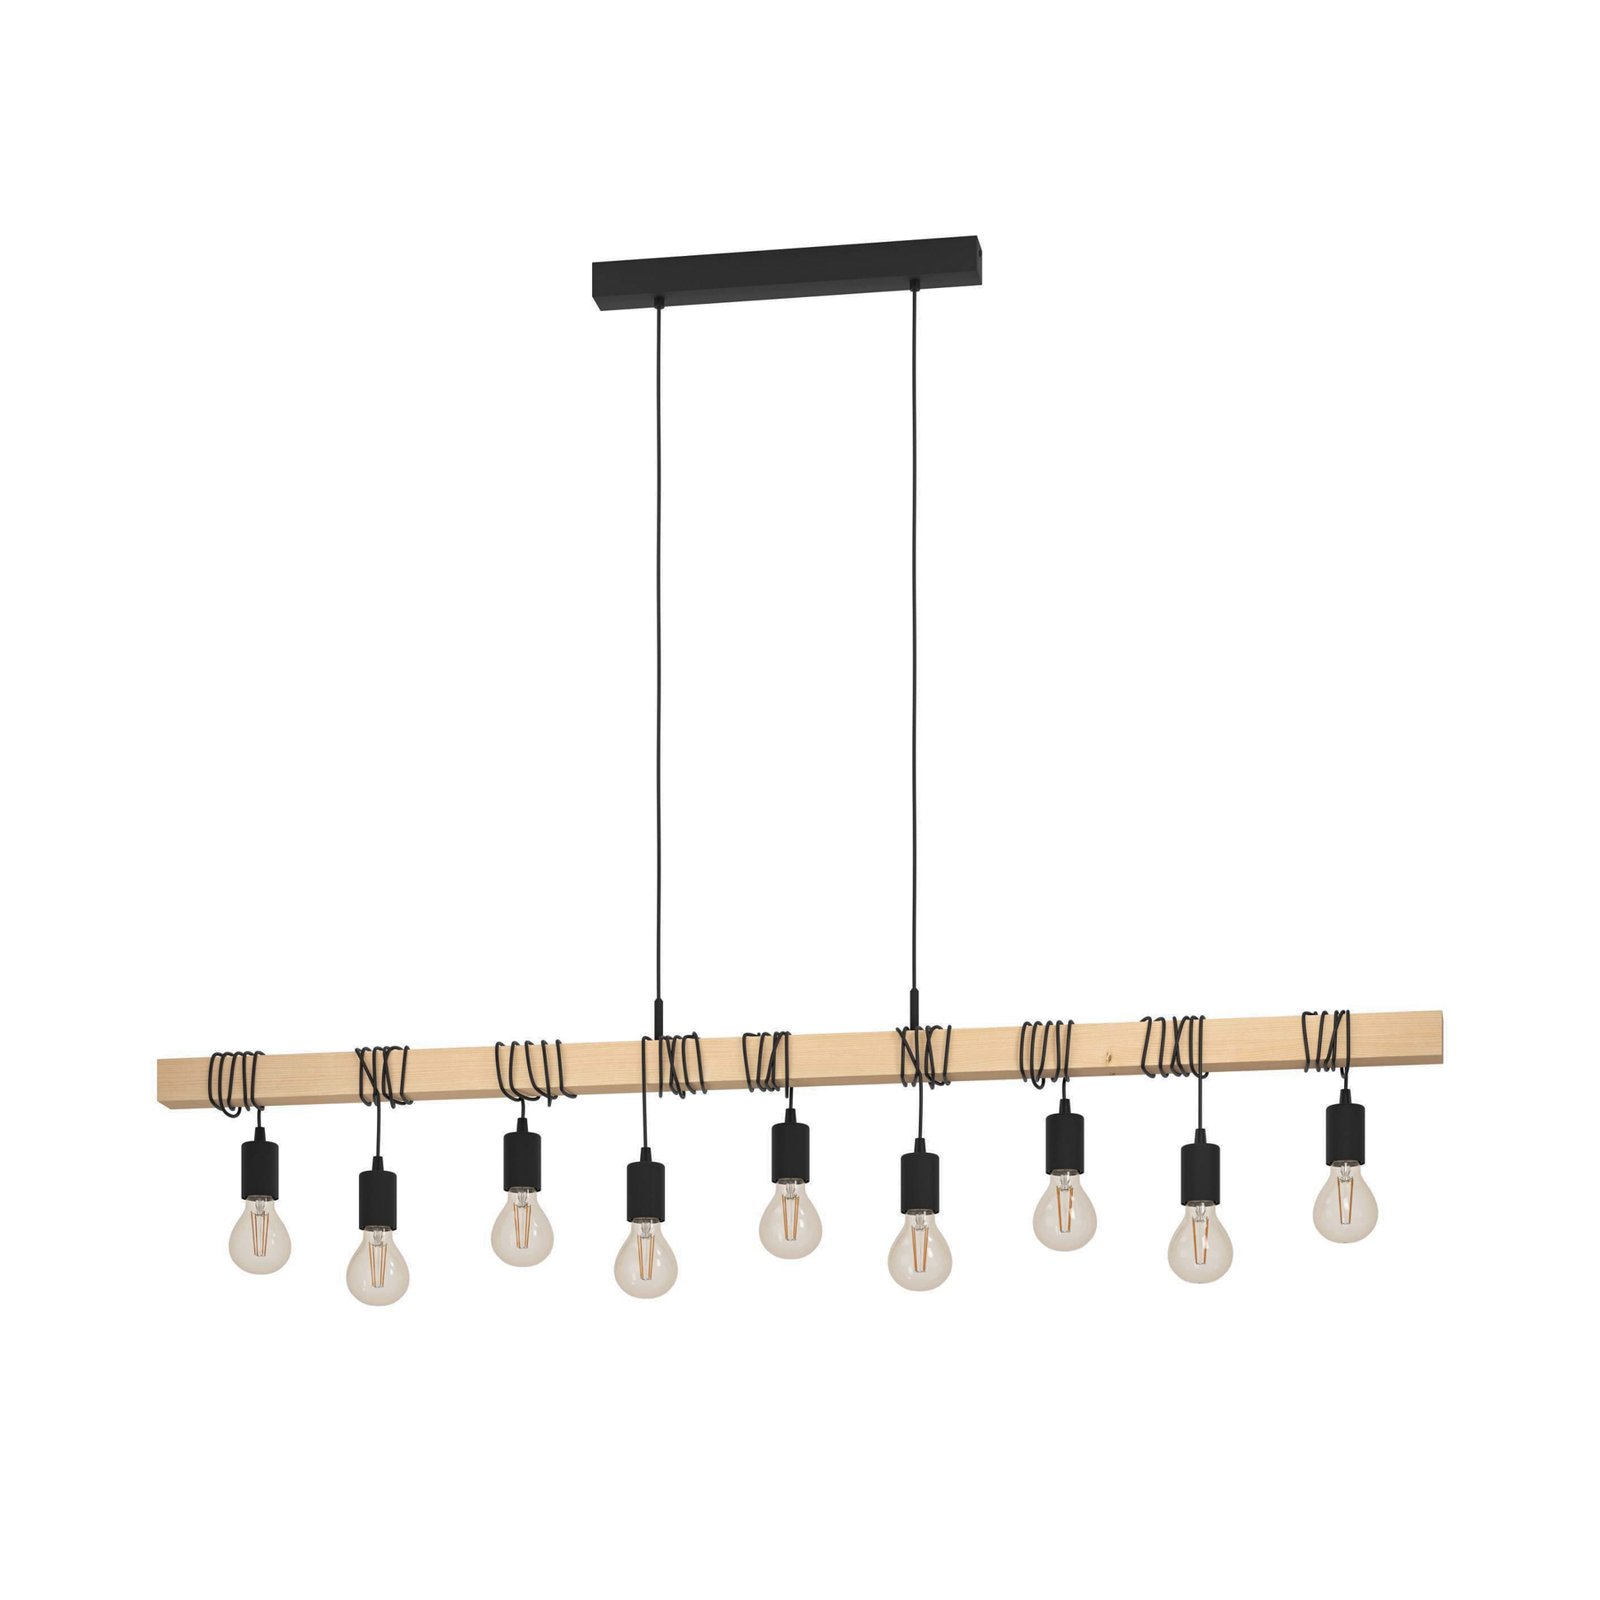 Townshend hanglamp, lengte 150 cm, zwart/hout, 9-lamps.